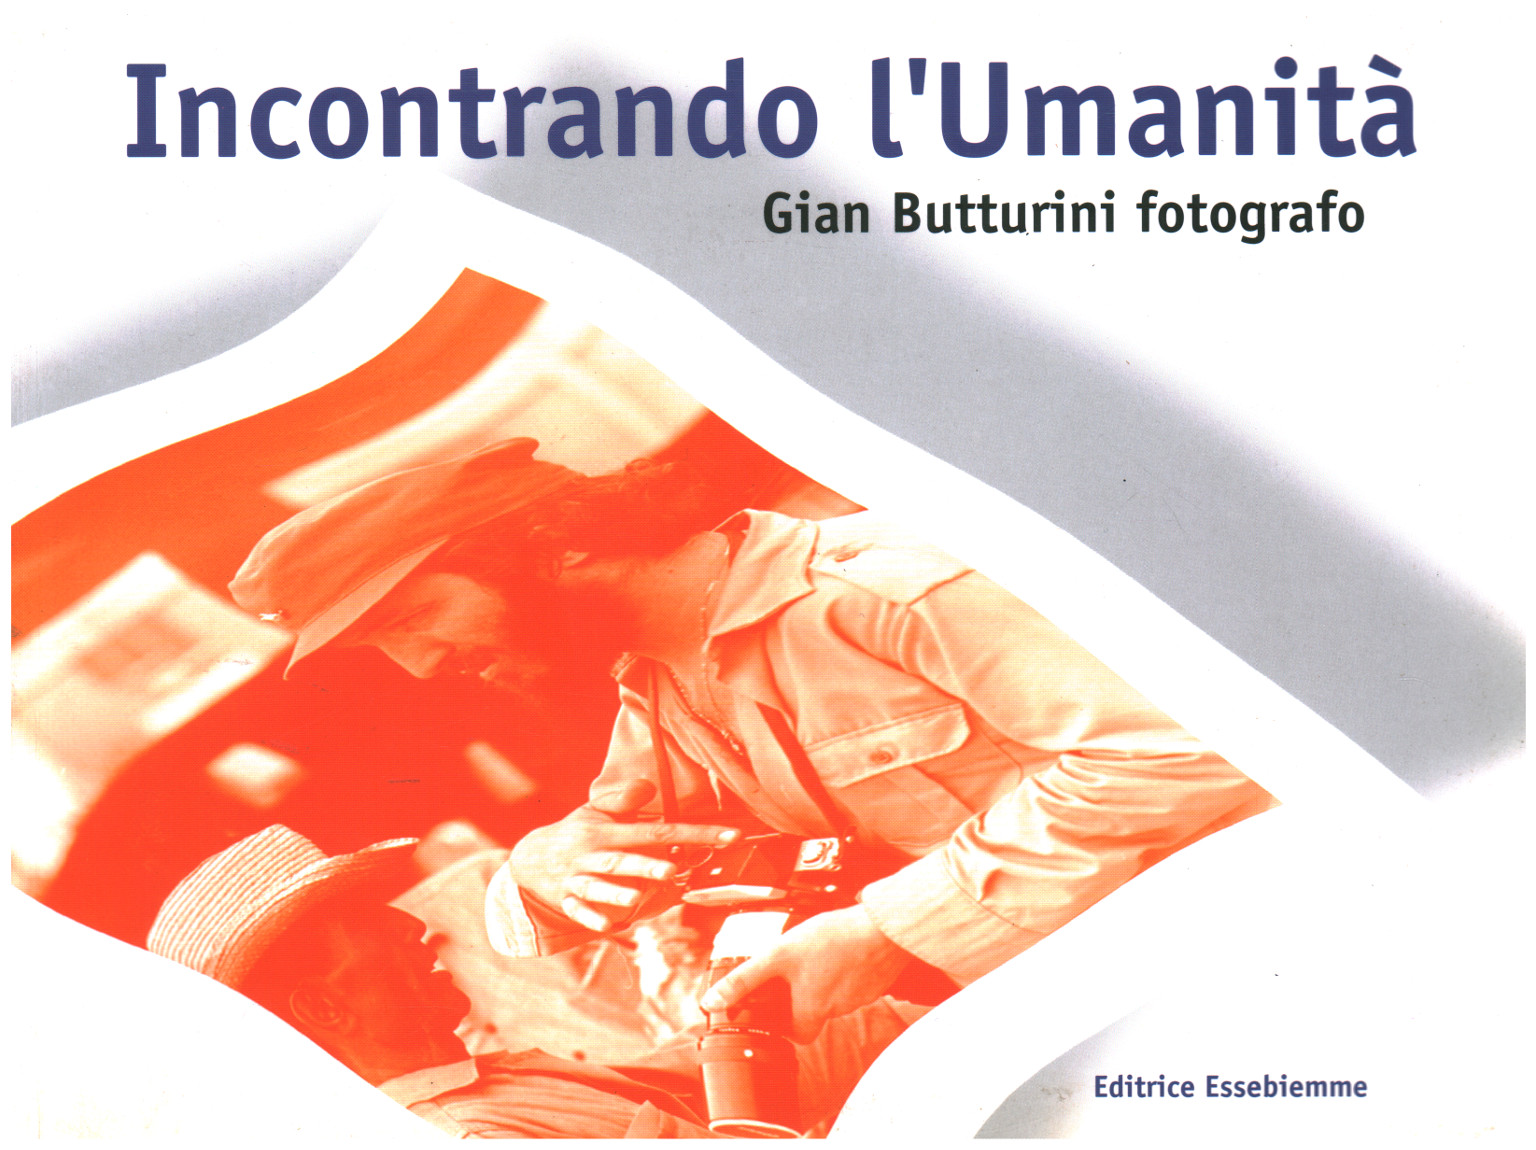 Treffen die menschheit, Gian Butturini